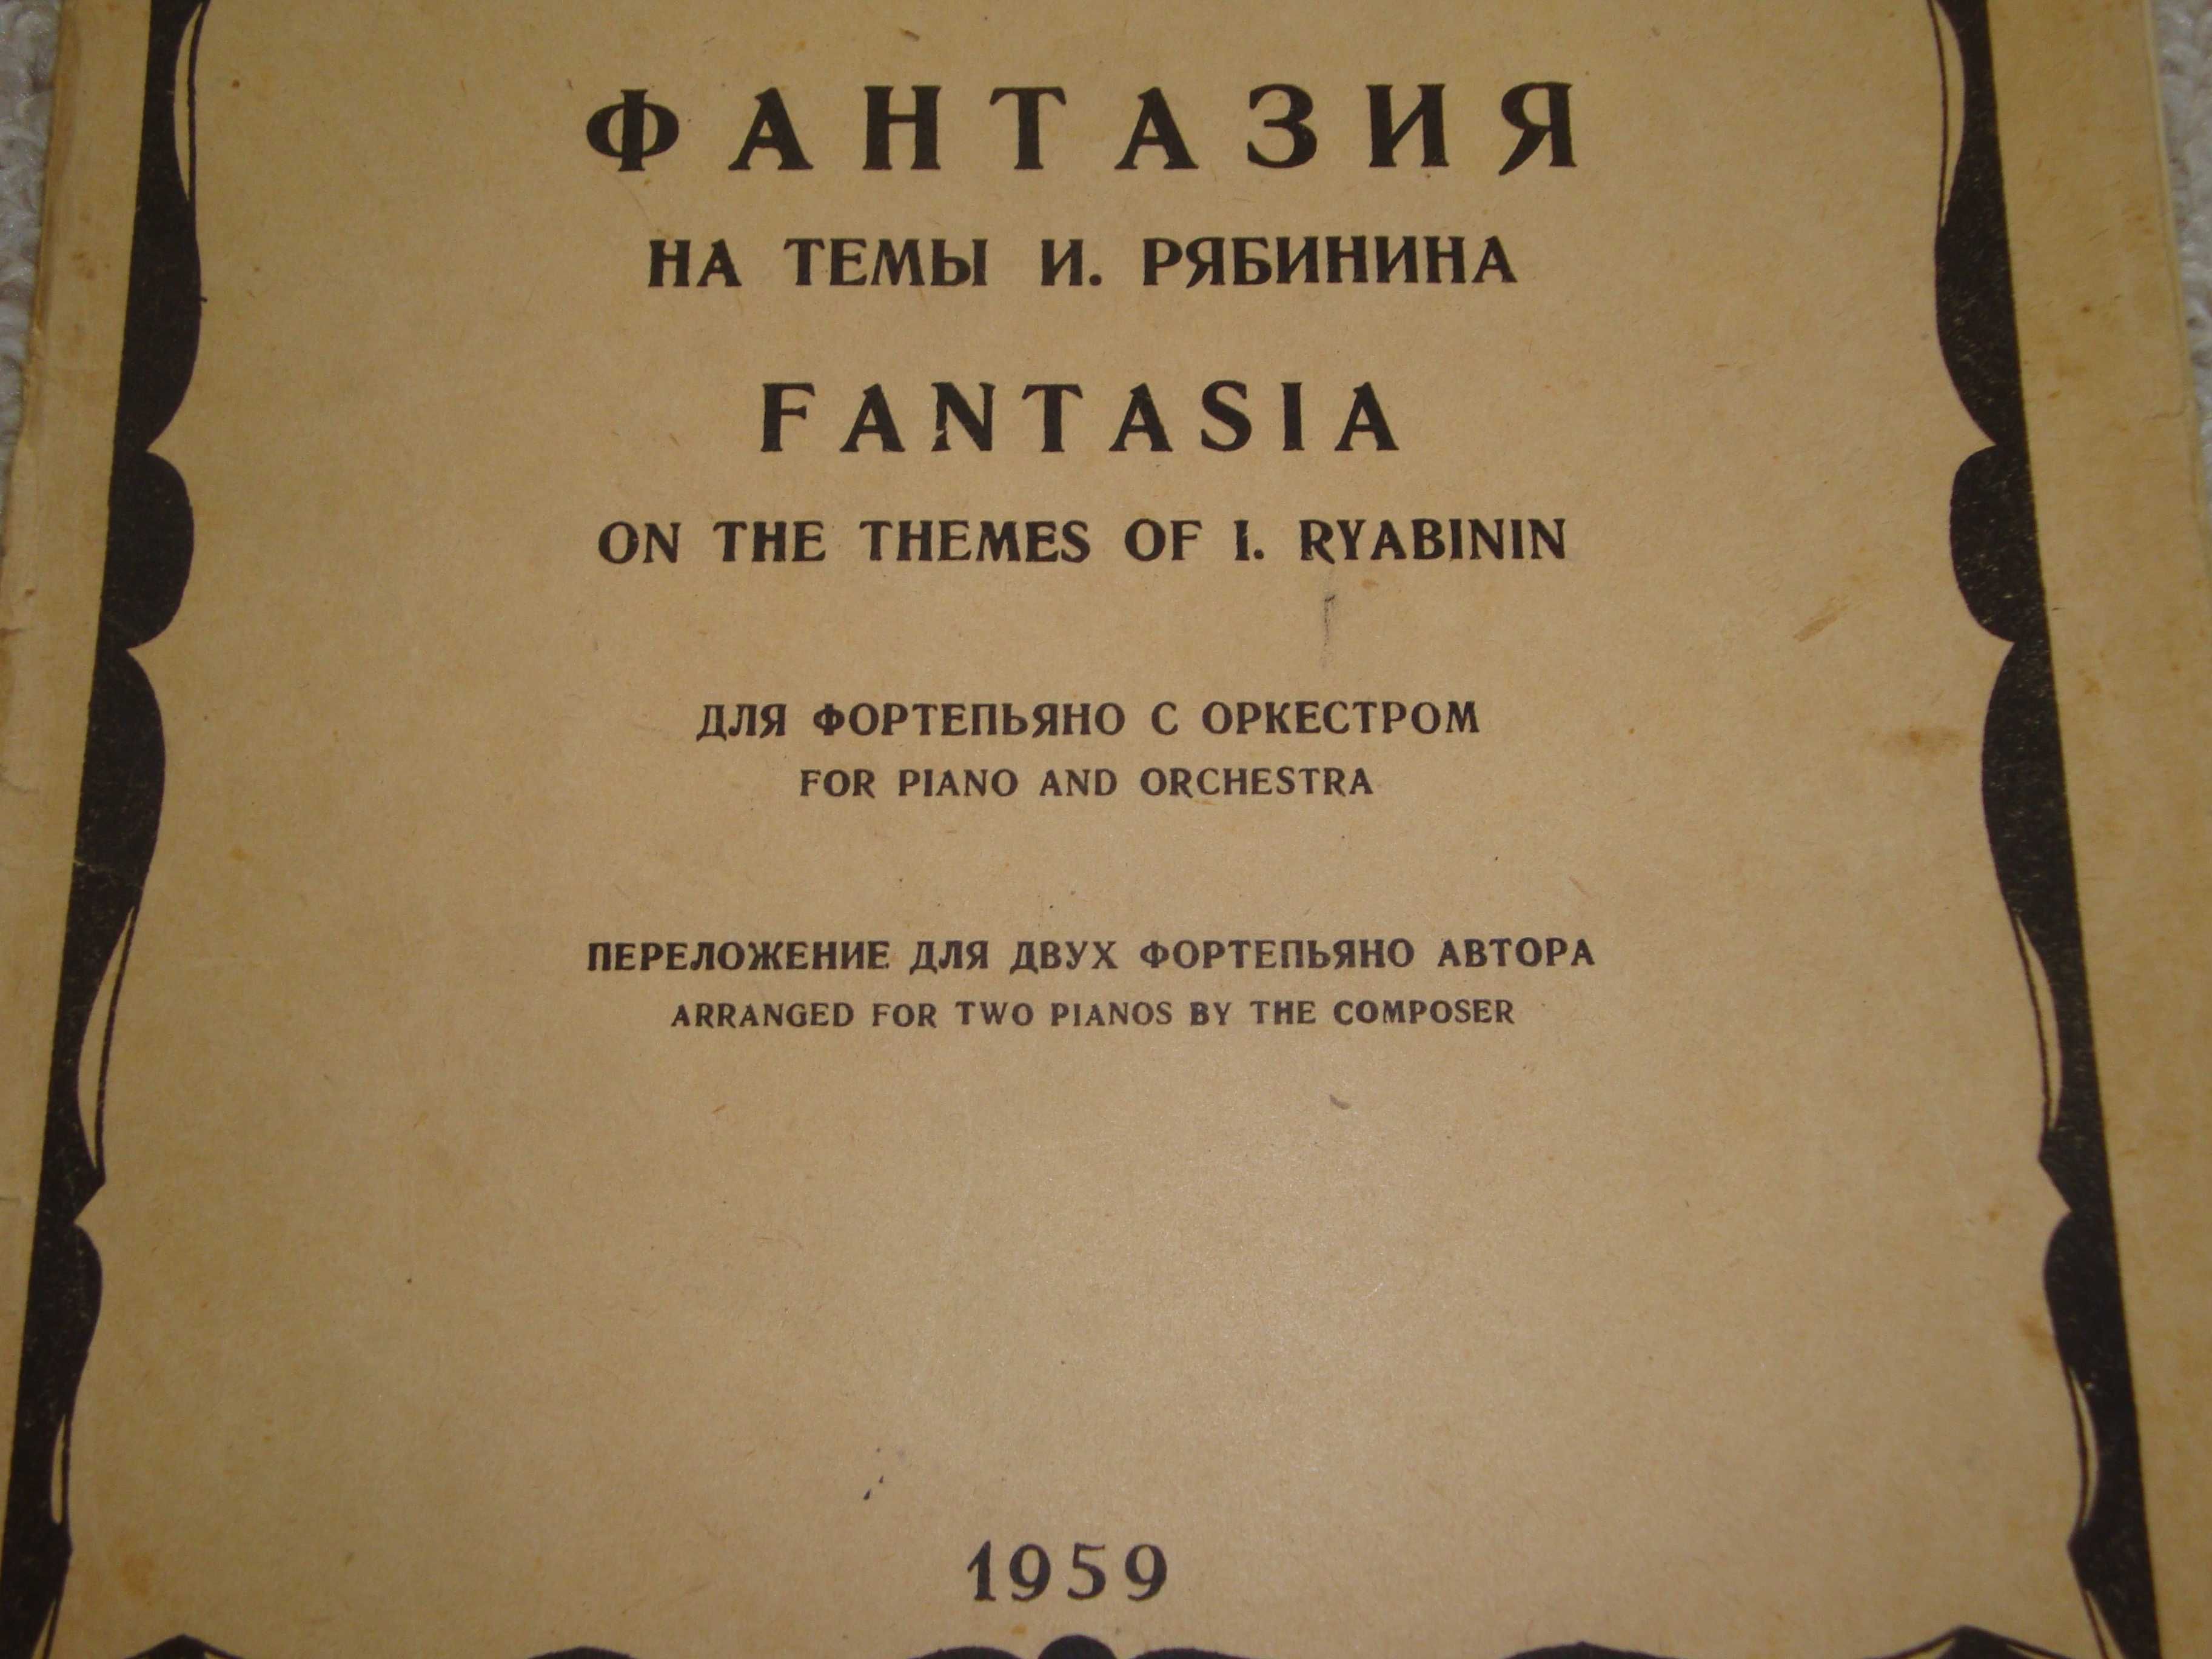 Ноты "Фантазия на темы И. Рябинина". 1959 год